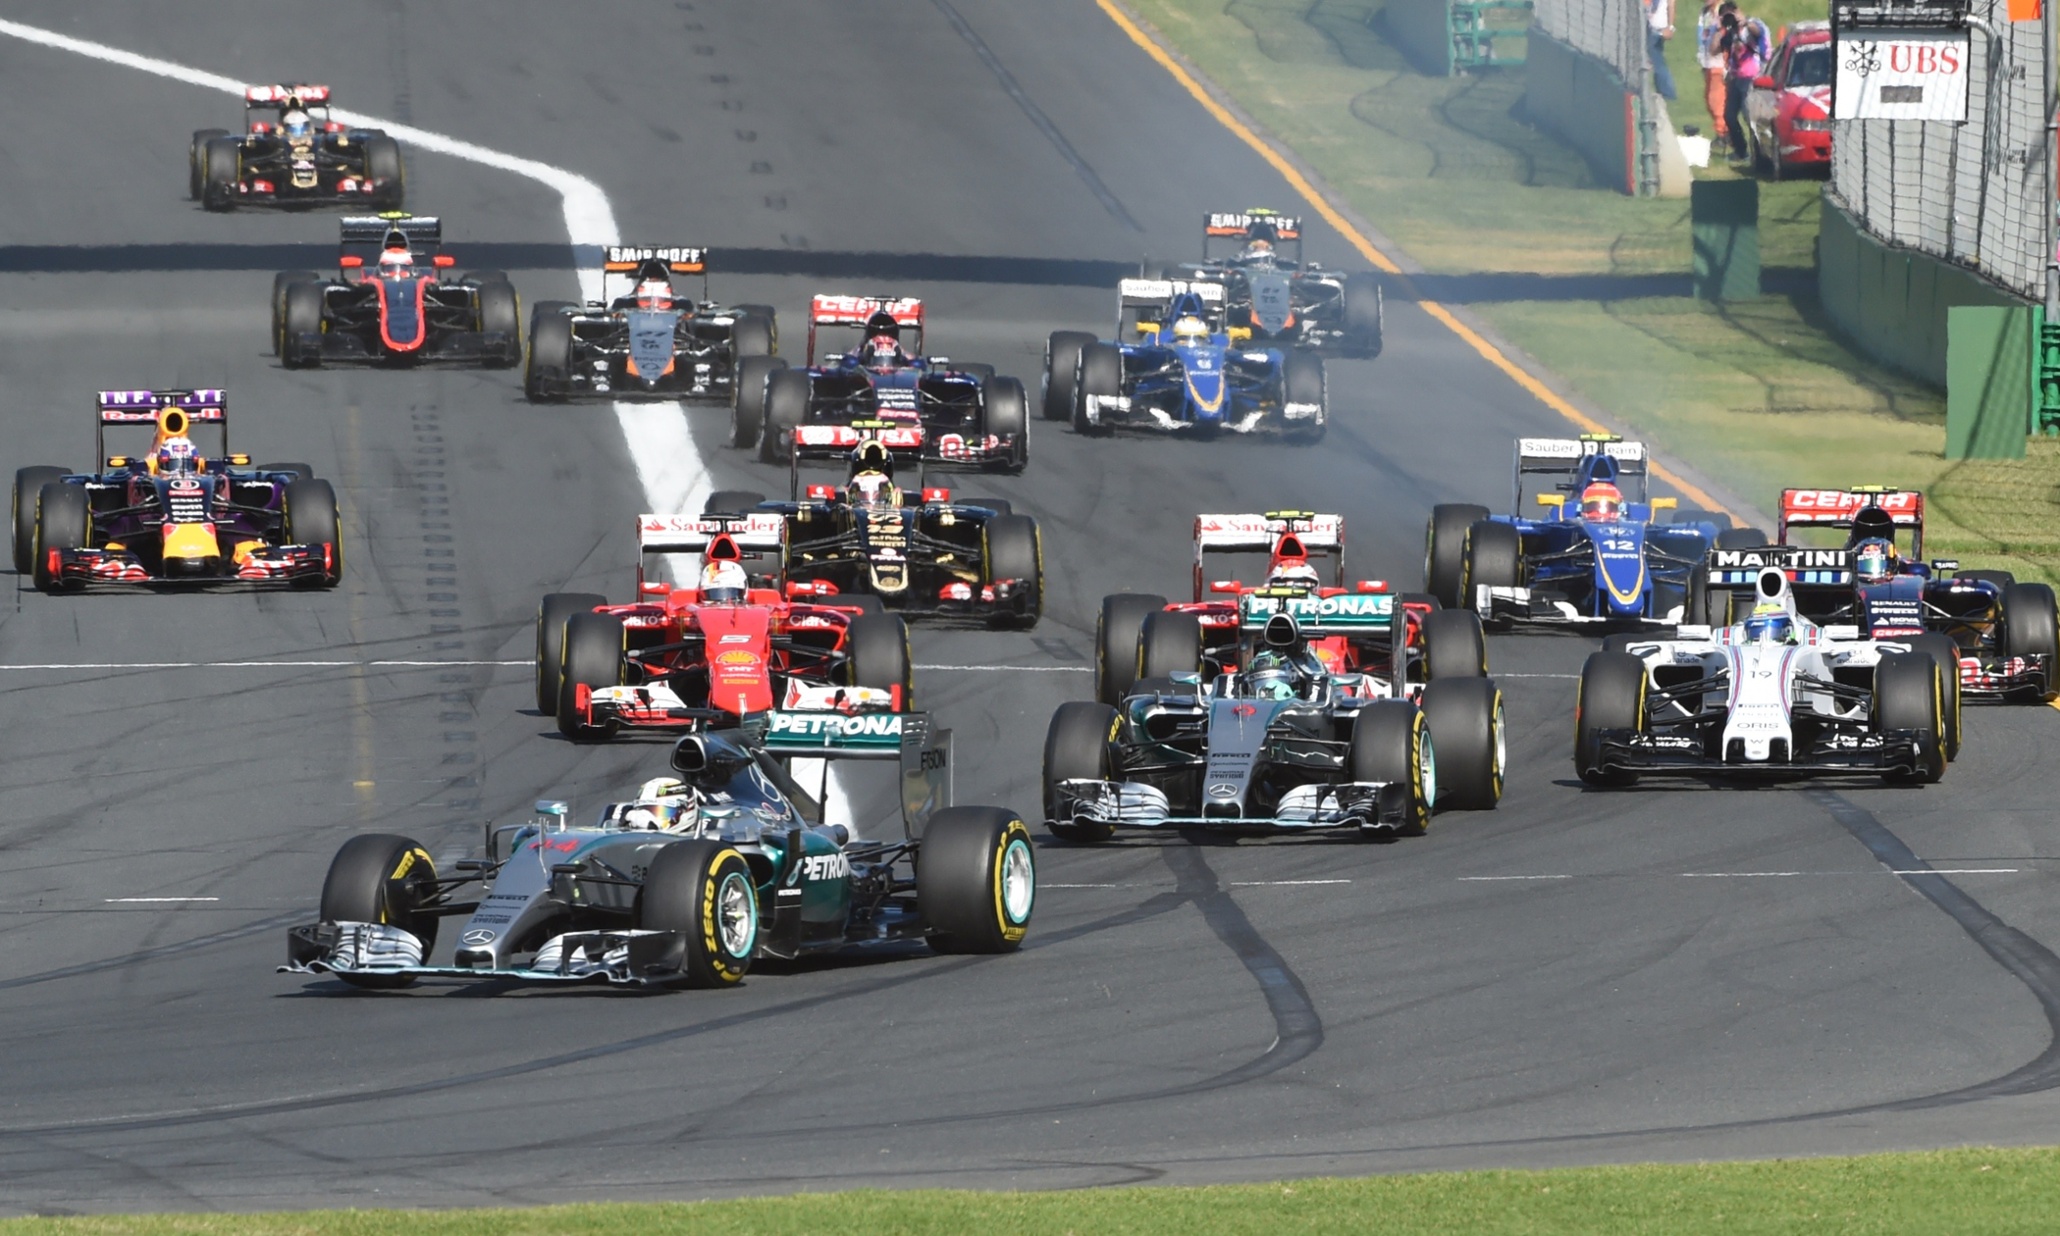 Australian GP F1 2015 as it happened Sport The Guardian